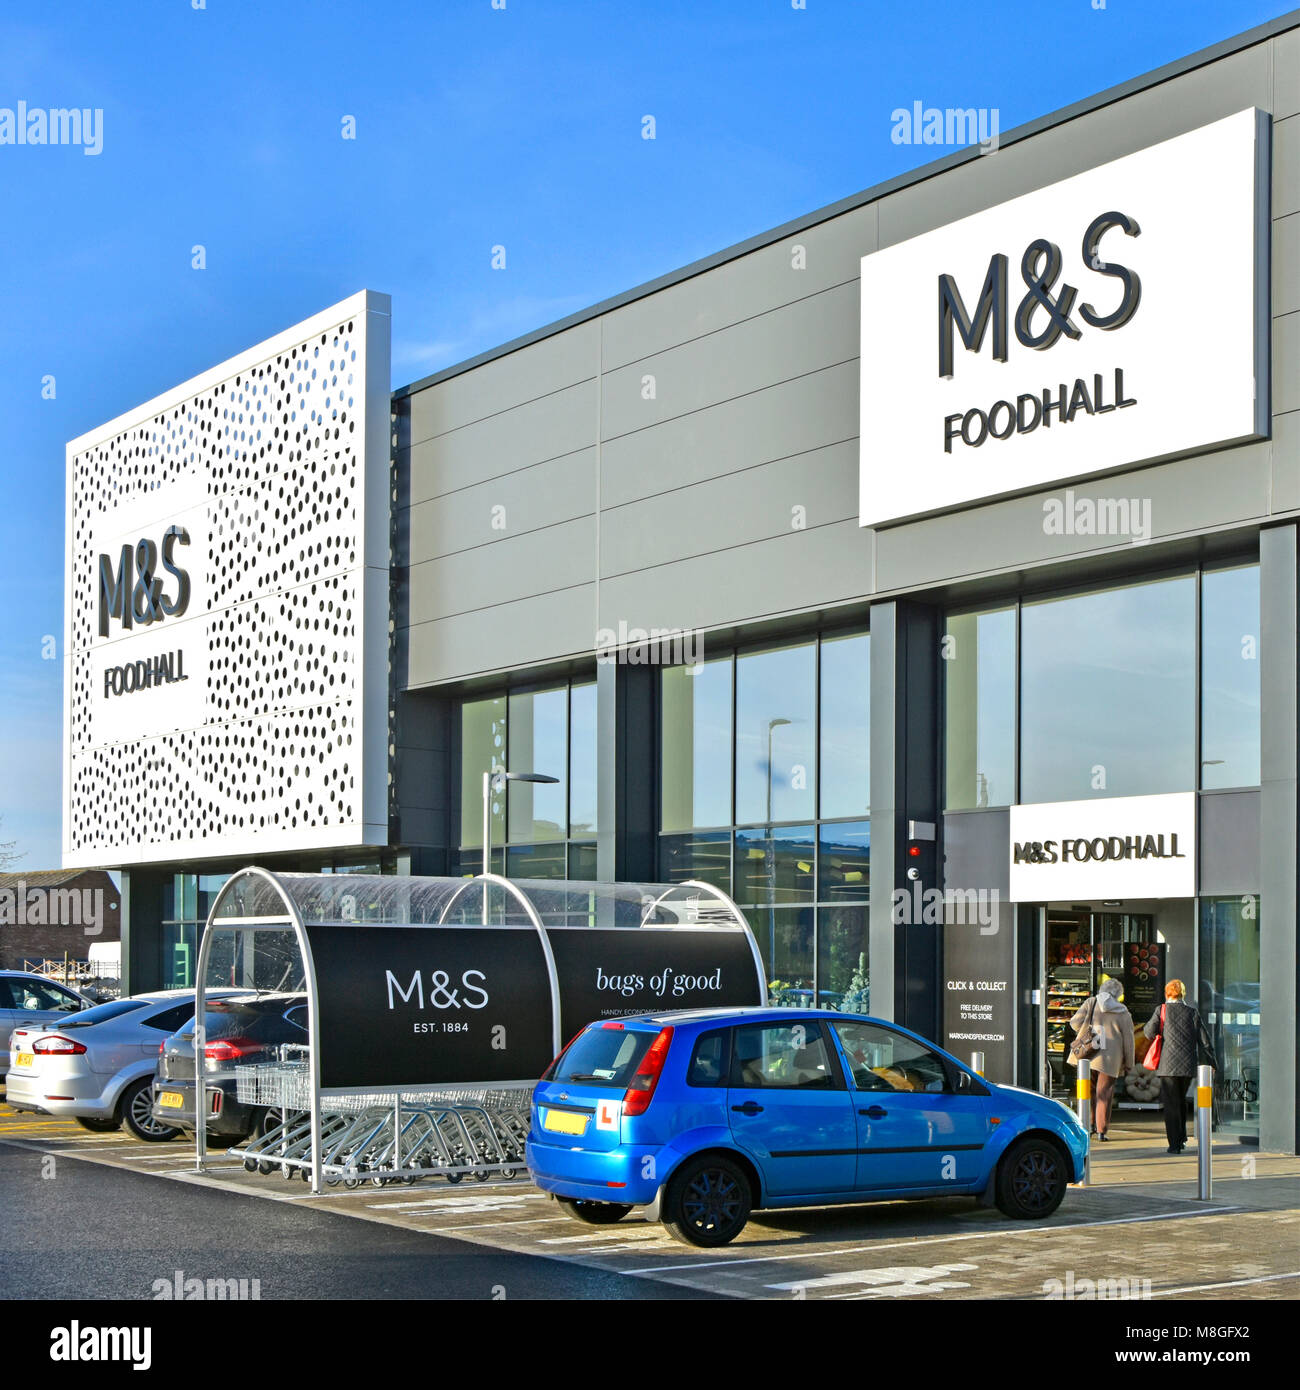 M&S moderne Architektur von Shop vordere Gebäude an Marks und Spencer foodhall im Retail Park essen Halle Einkaufen & Kunden Chelmsford Essex England Großbritannien Stockfoto